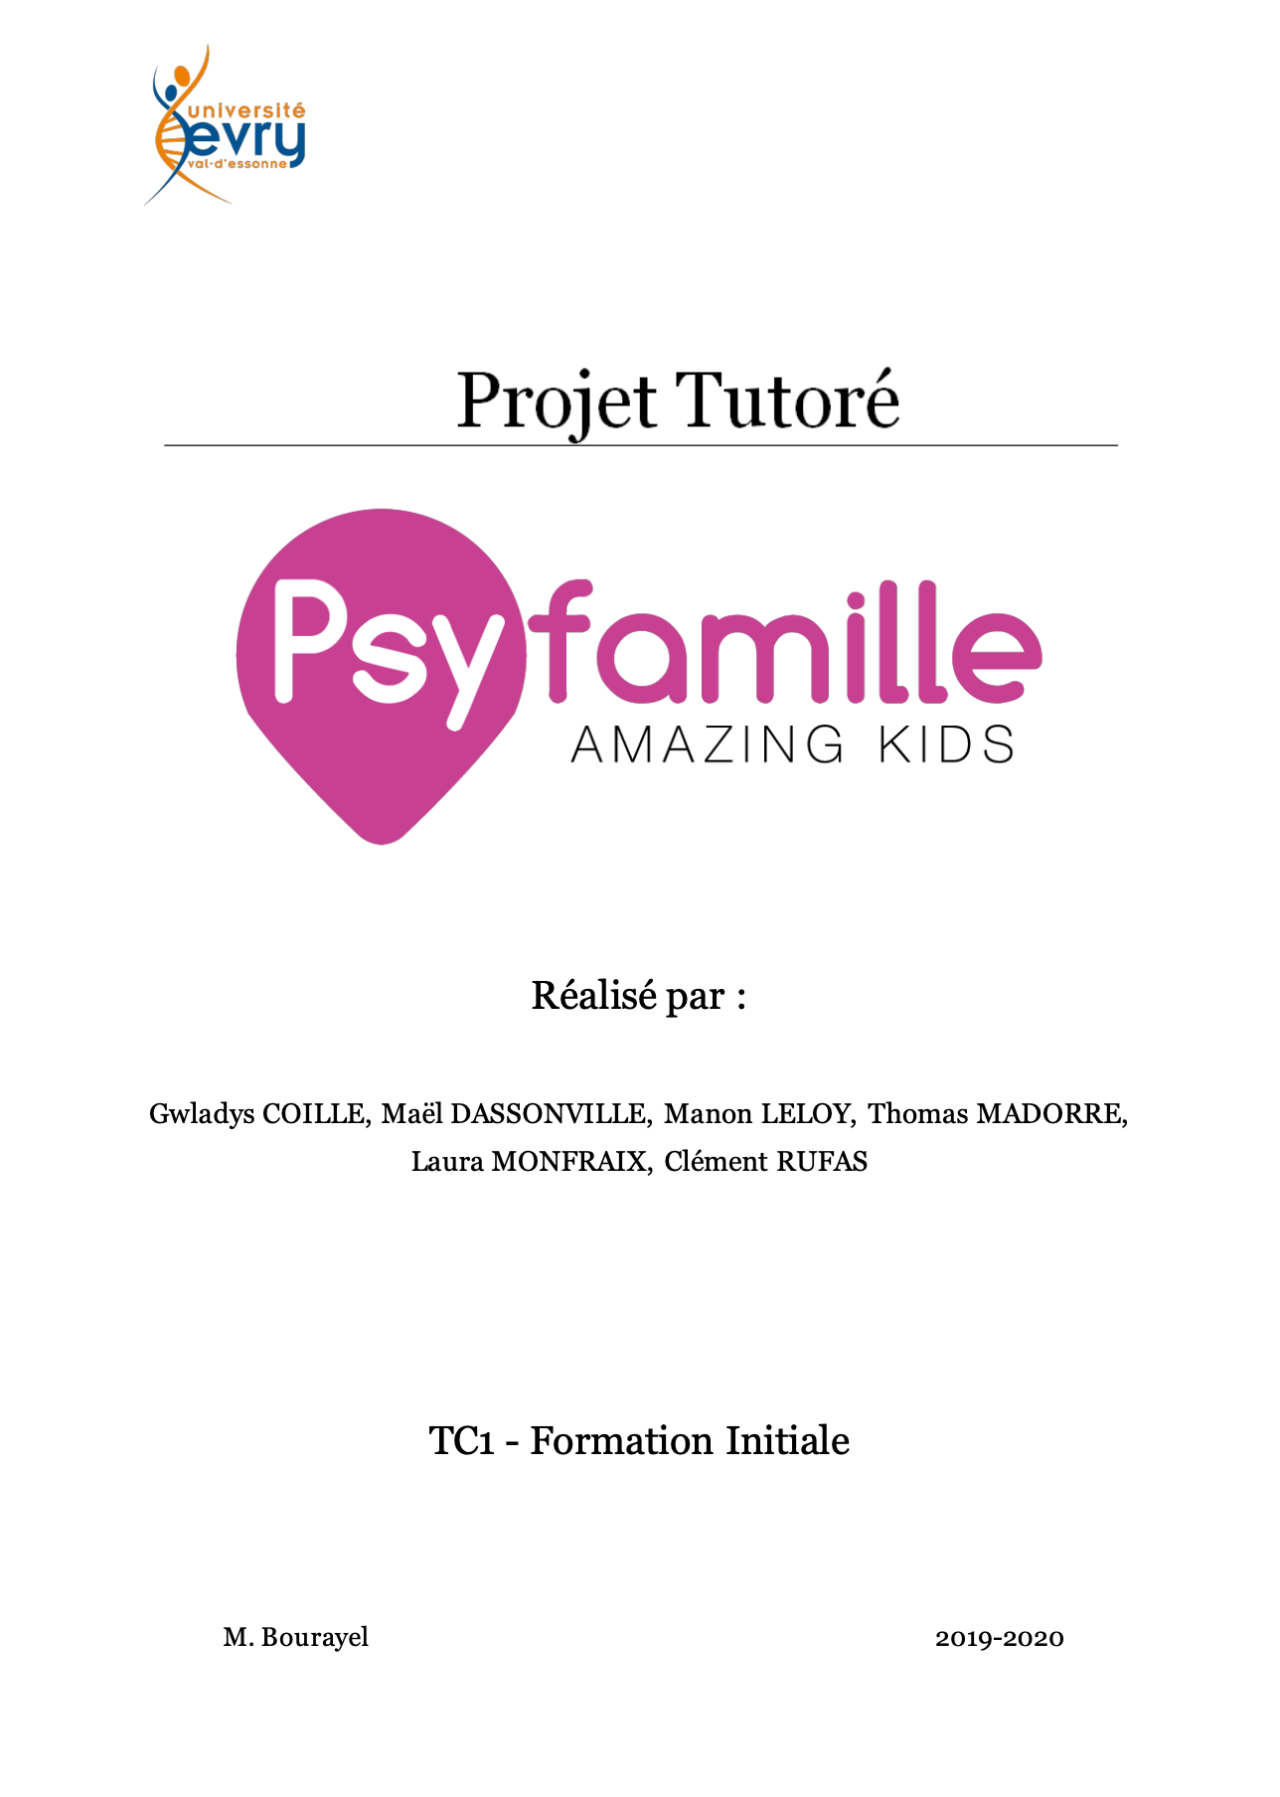 Dossier-projet-tutoré-1-1280x1797.png